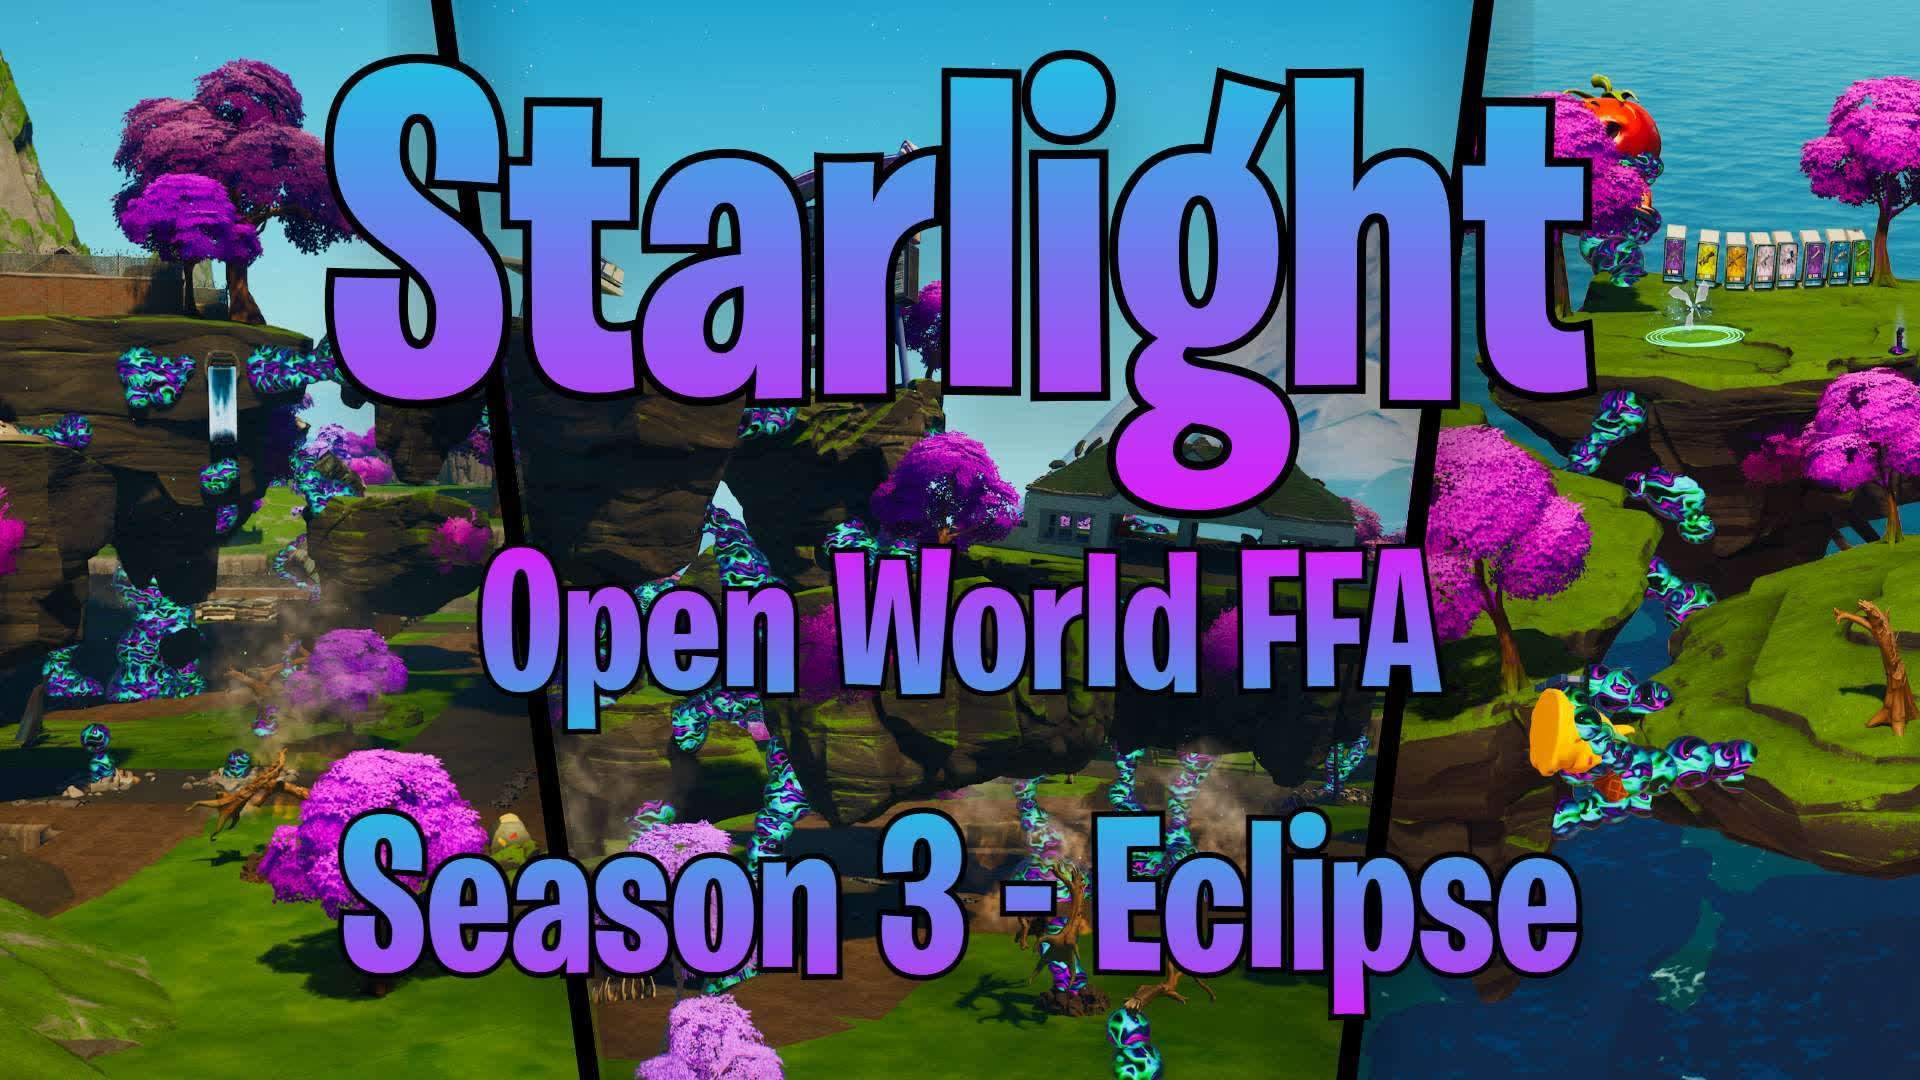 Starlight Season 3 - Eclipse